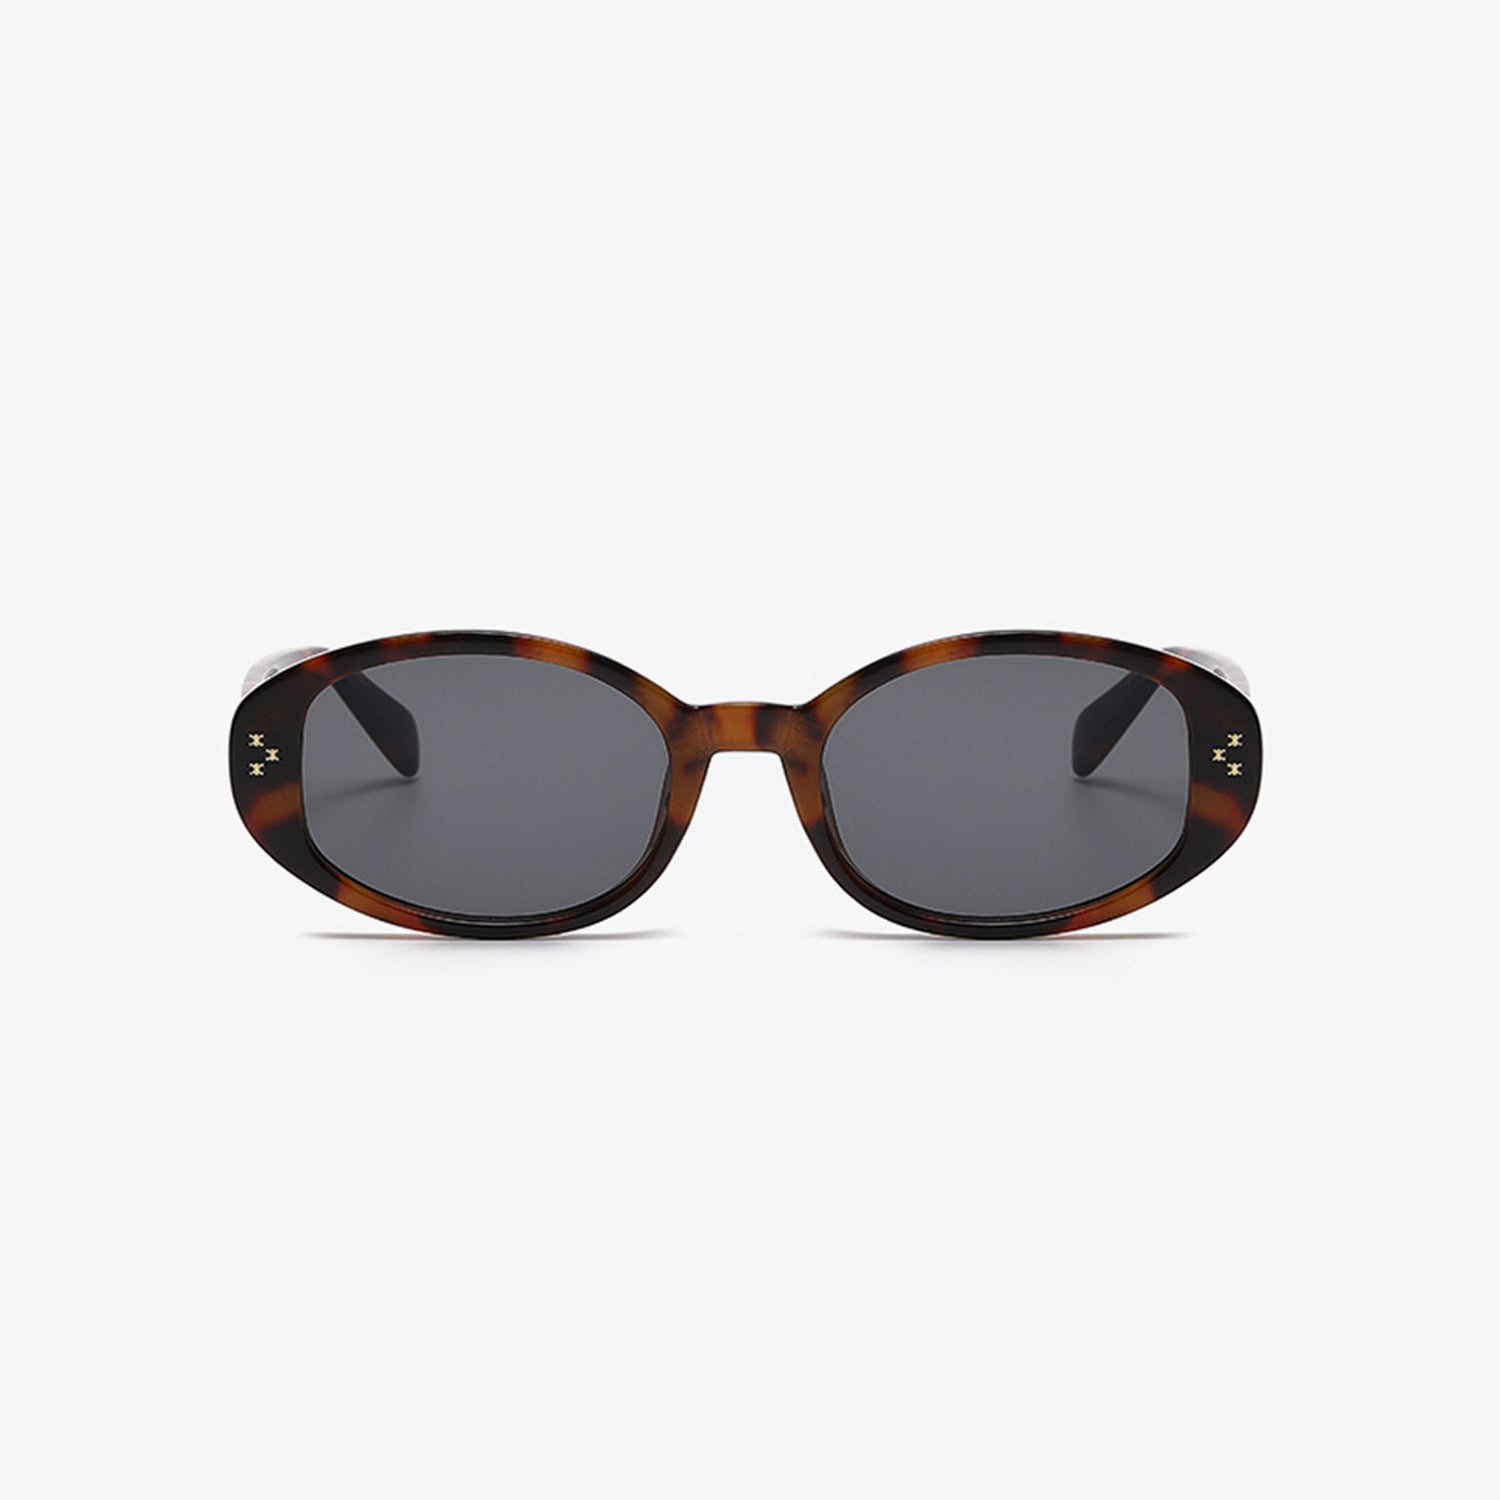 TEEK - Styled Oval Frame Oval Sunglasses EYEGLASSES TEEK Trend   